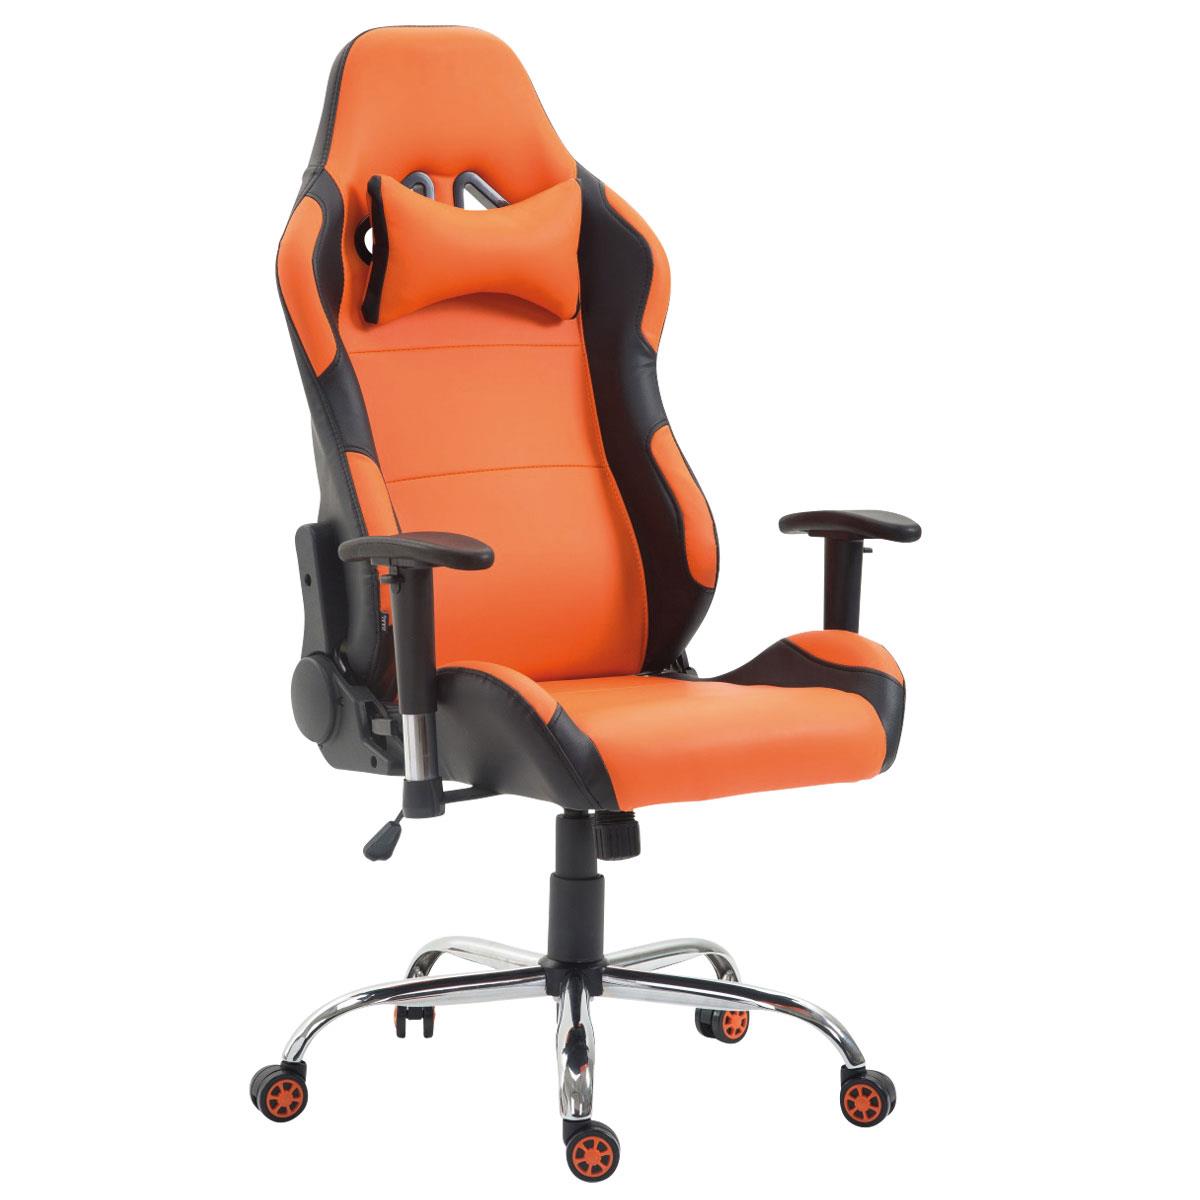 Sedia Gaming ROSBY, Design Sportivo e Grande Comfort, in Pelle, colore Arancione